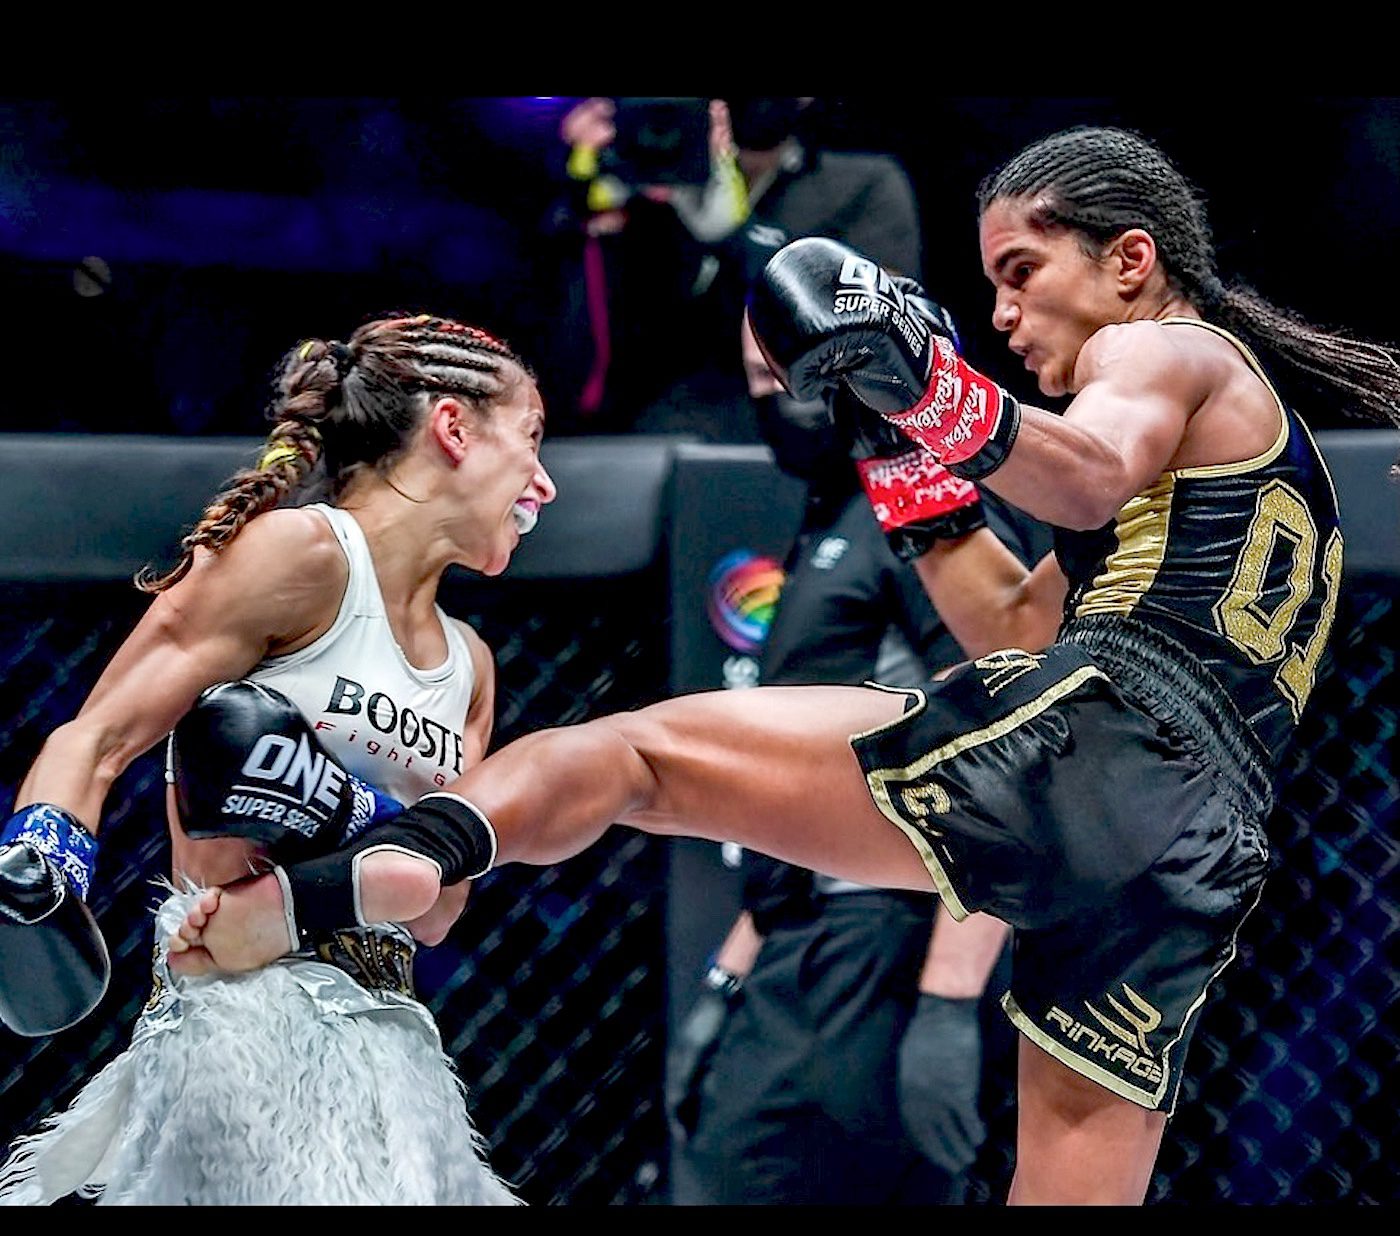 Thaïlande: les femmes dans le milieu de la boxe - Reportage